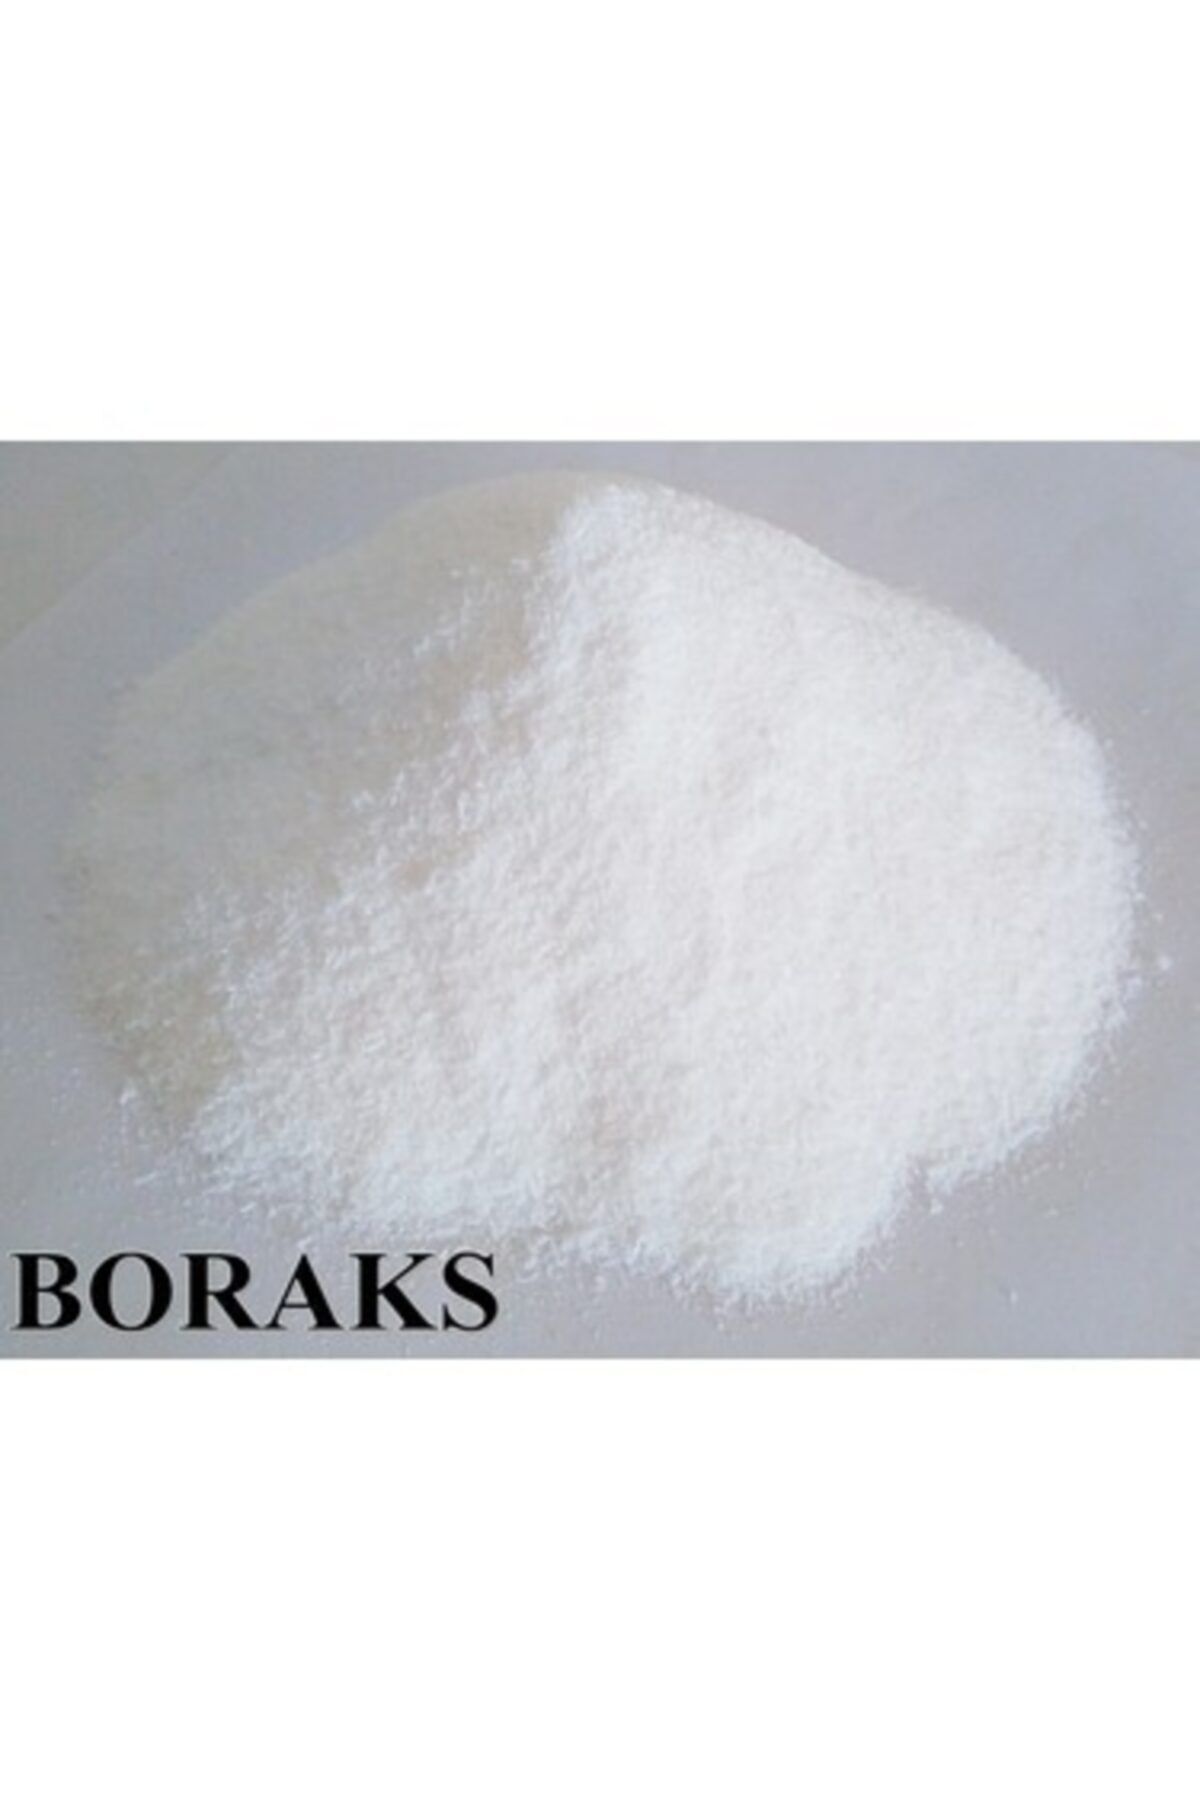 naturalköyürünleri Saf Boraks 2 Kg